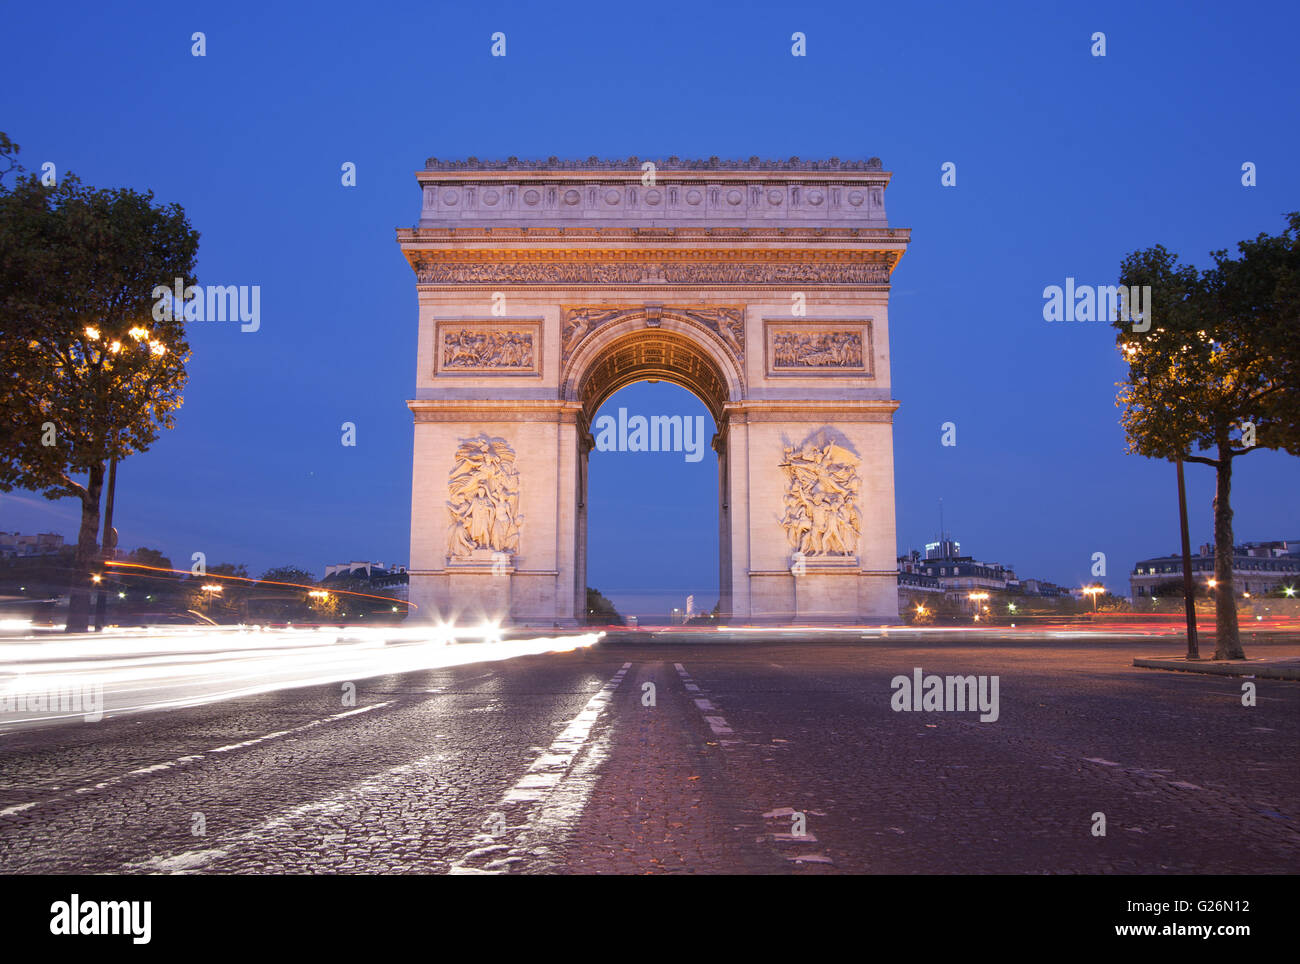 Vue avant de l'Arc de Triomphe (Arch of Triumph) à Paris au crépuscule avec feu trail Banque D'Images